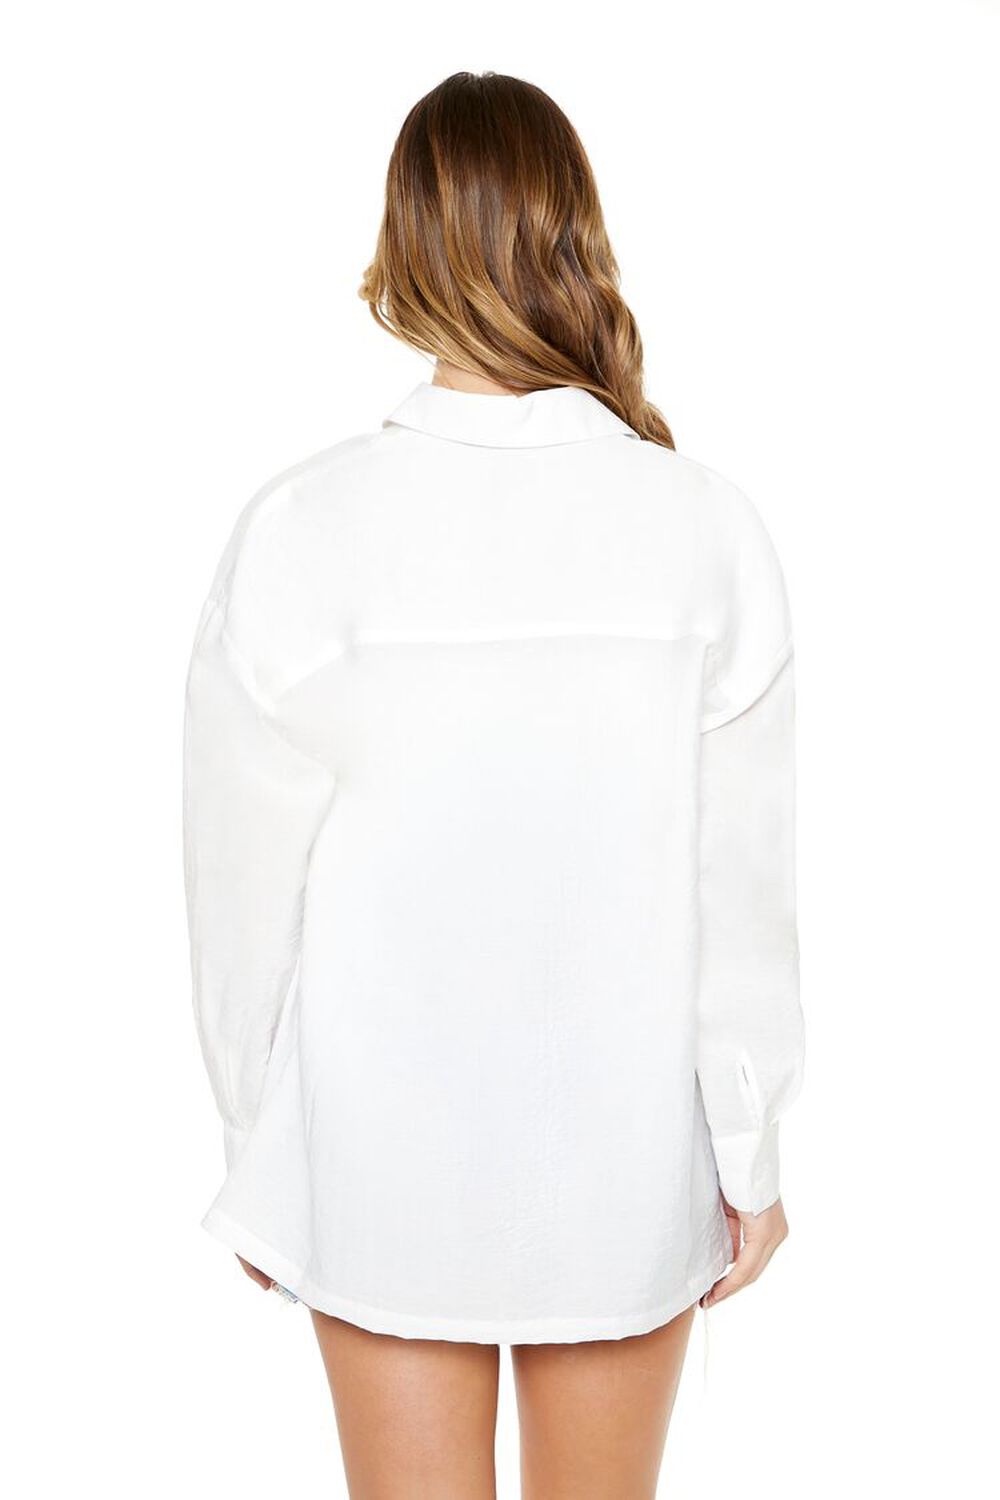 WHITE Crinkled Pocket Shirt, image 3